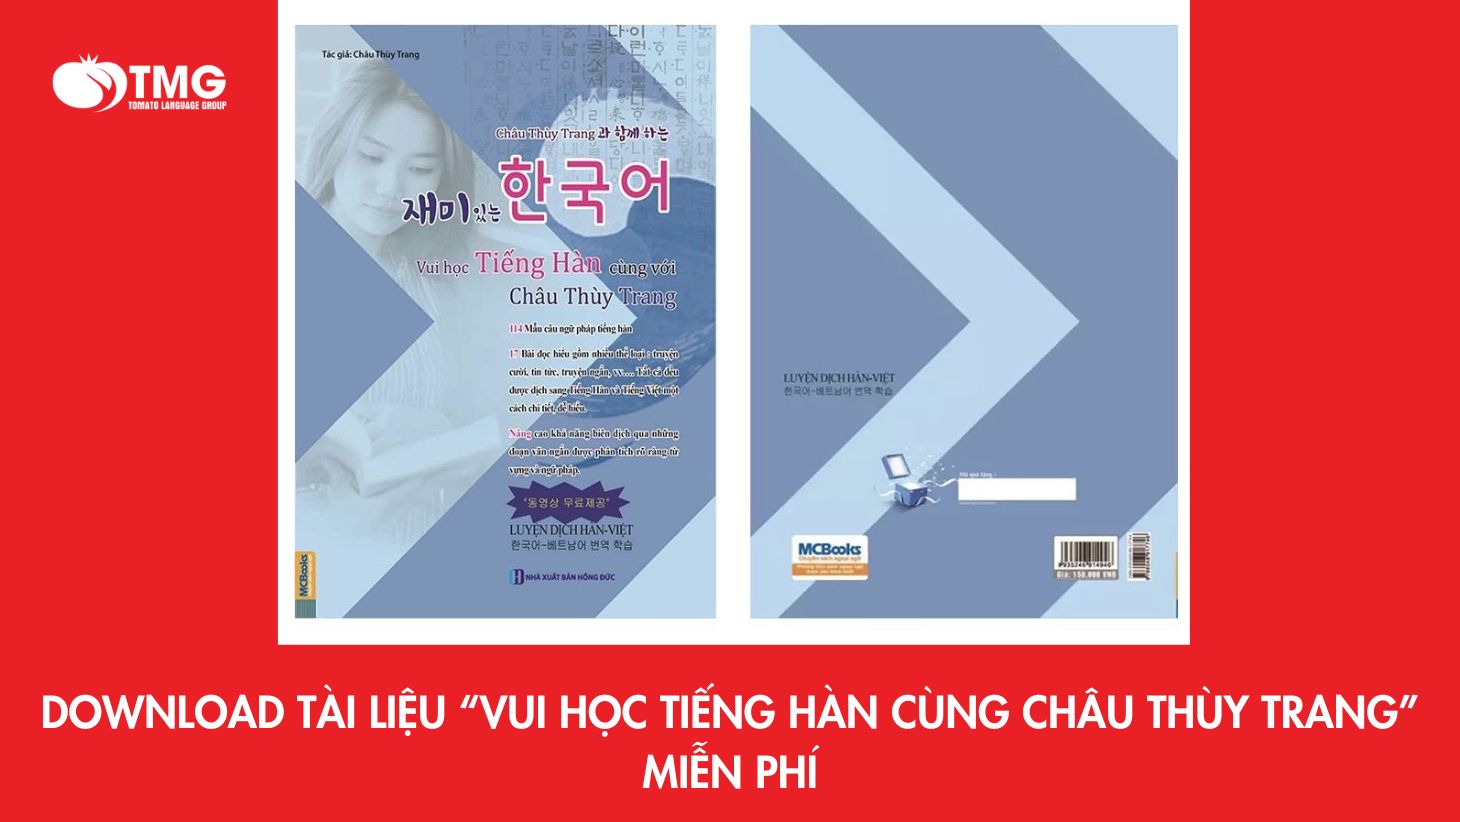 Download “Vui học tiếng Hàn cùng Châu Thùy Trang” miễn phí